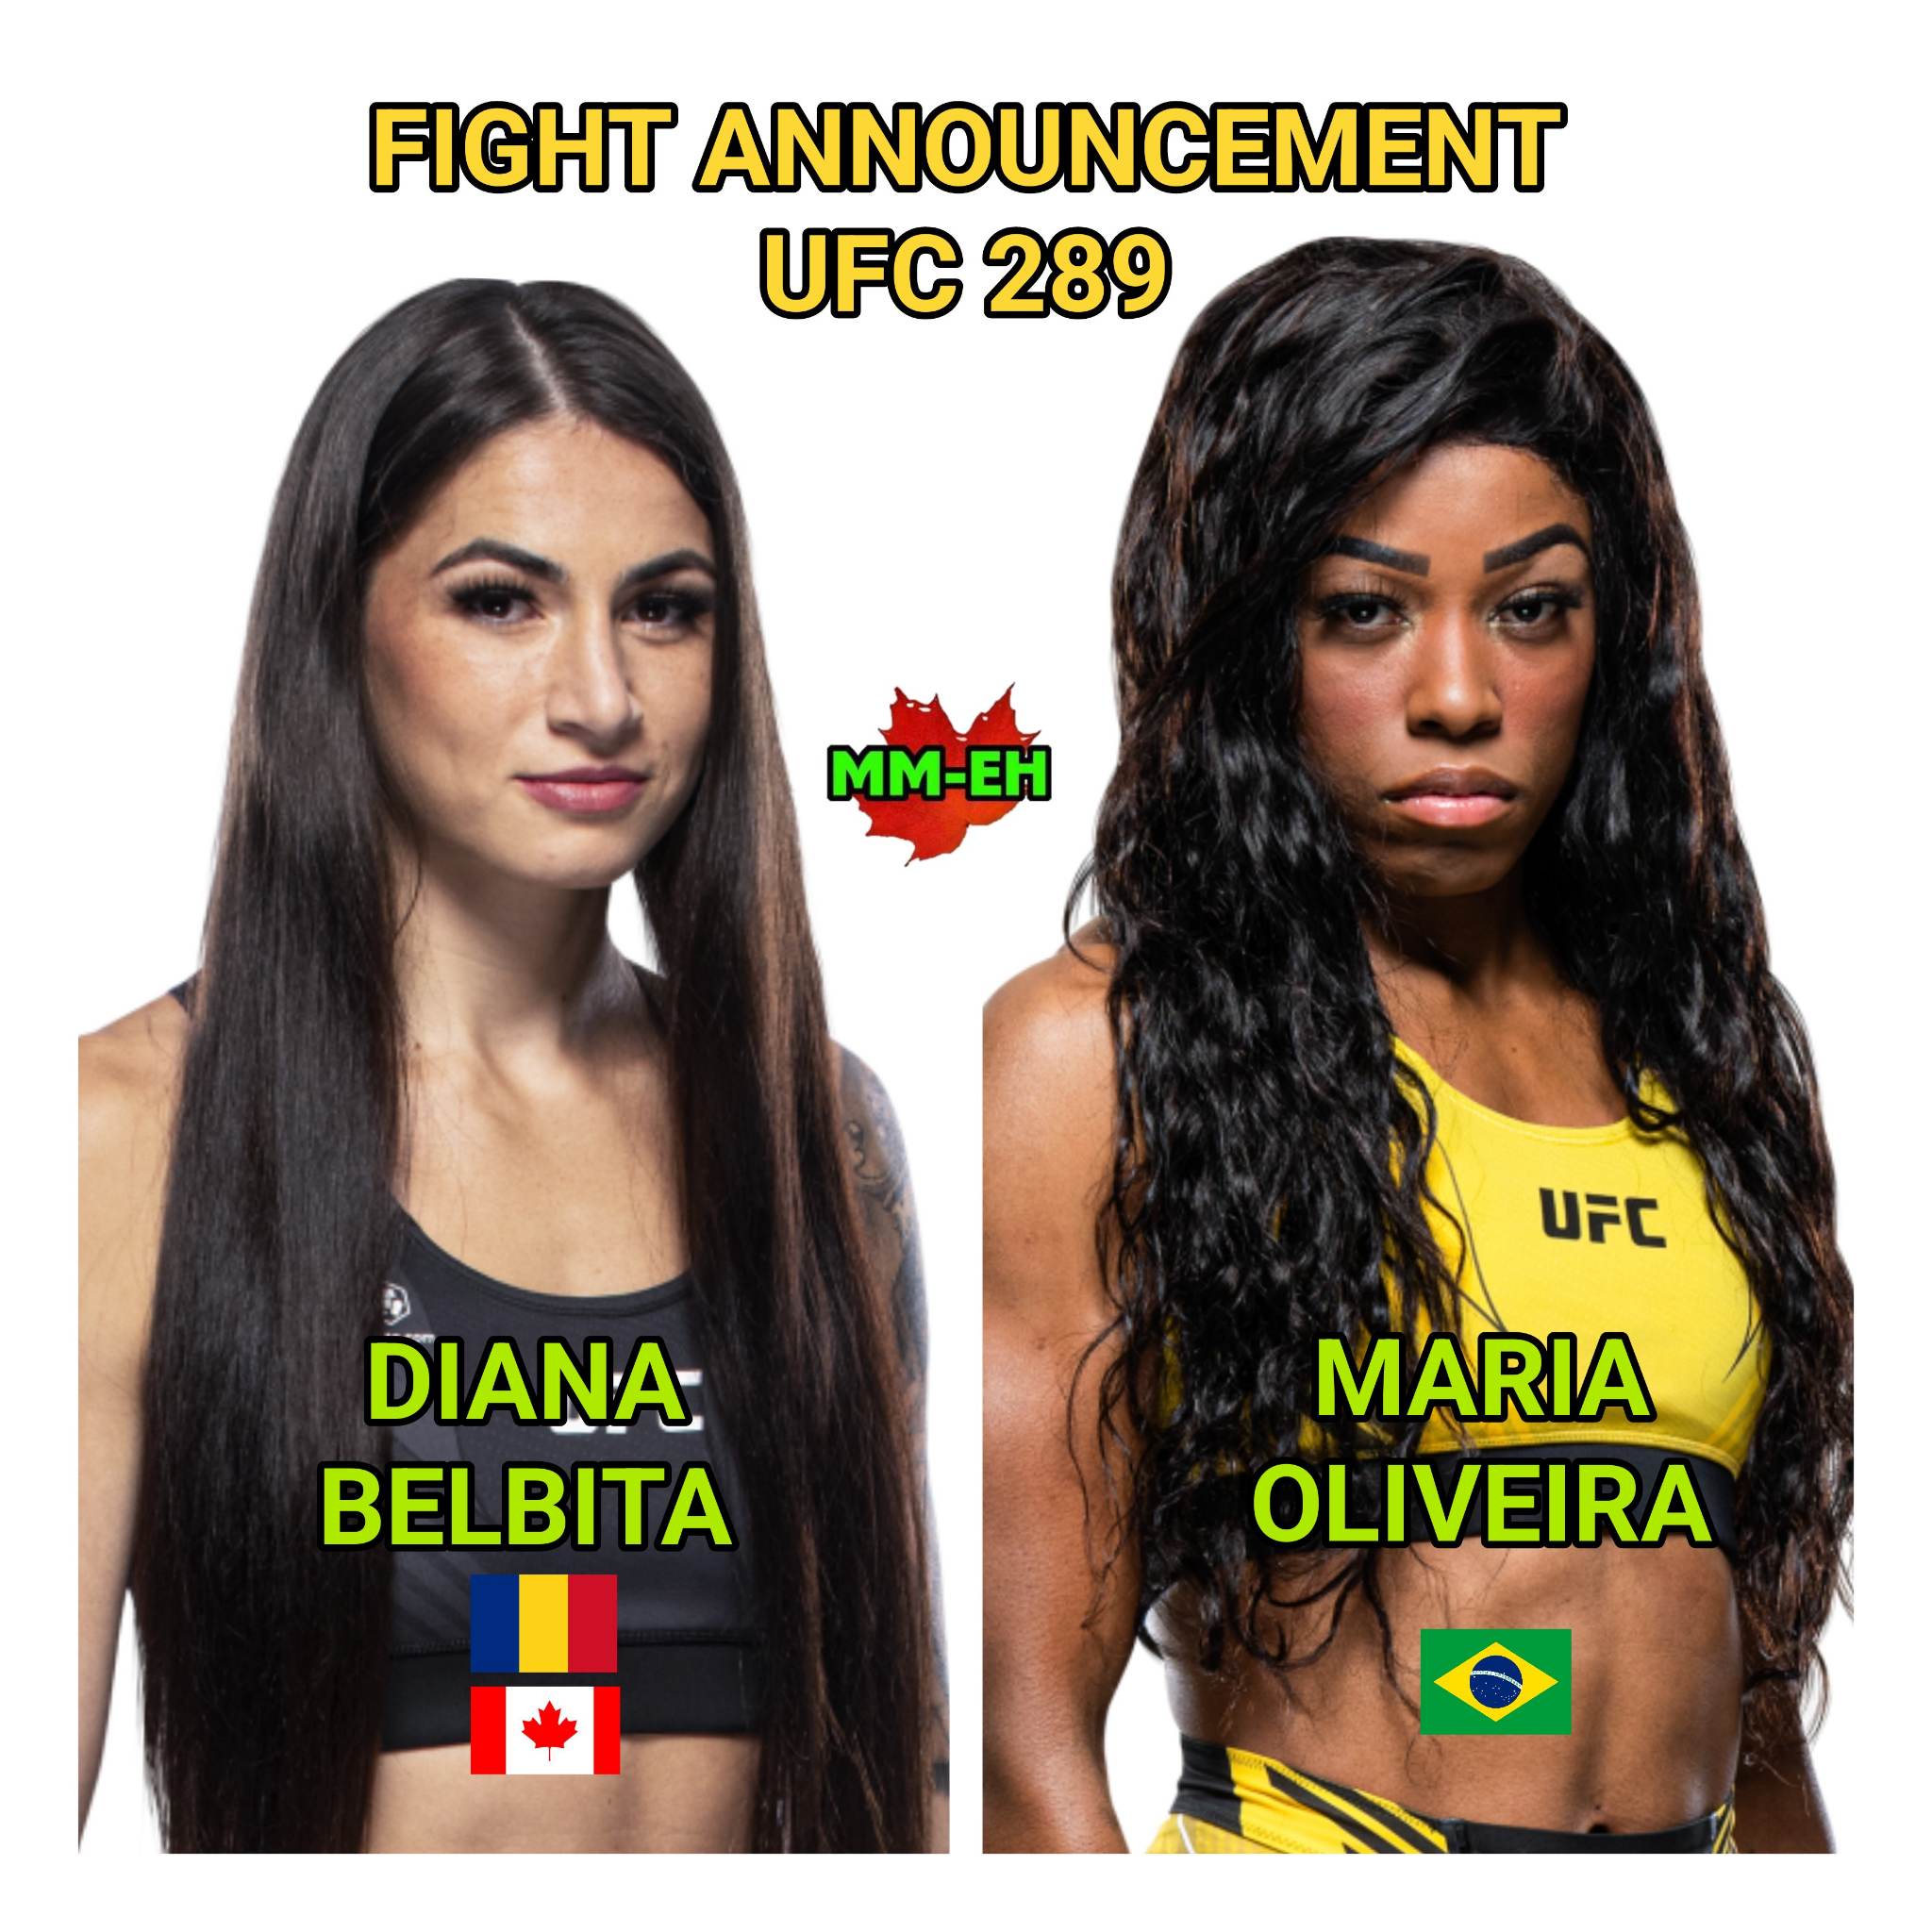 Diana Belbita UFC 289 MM-eh